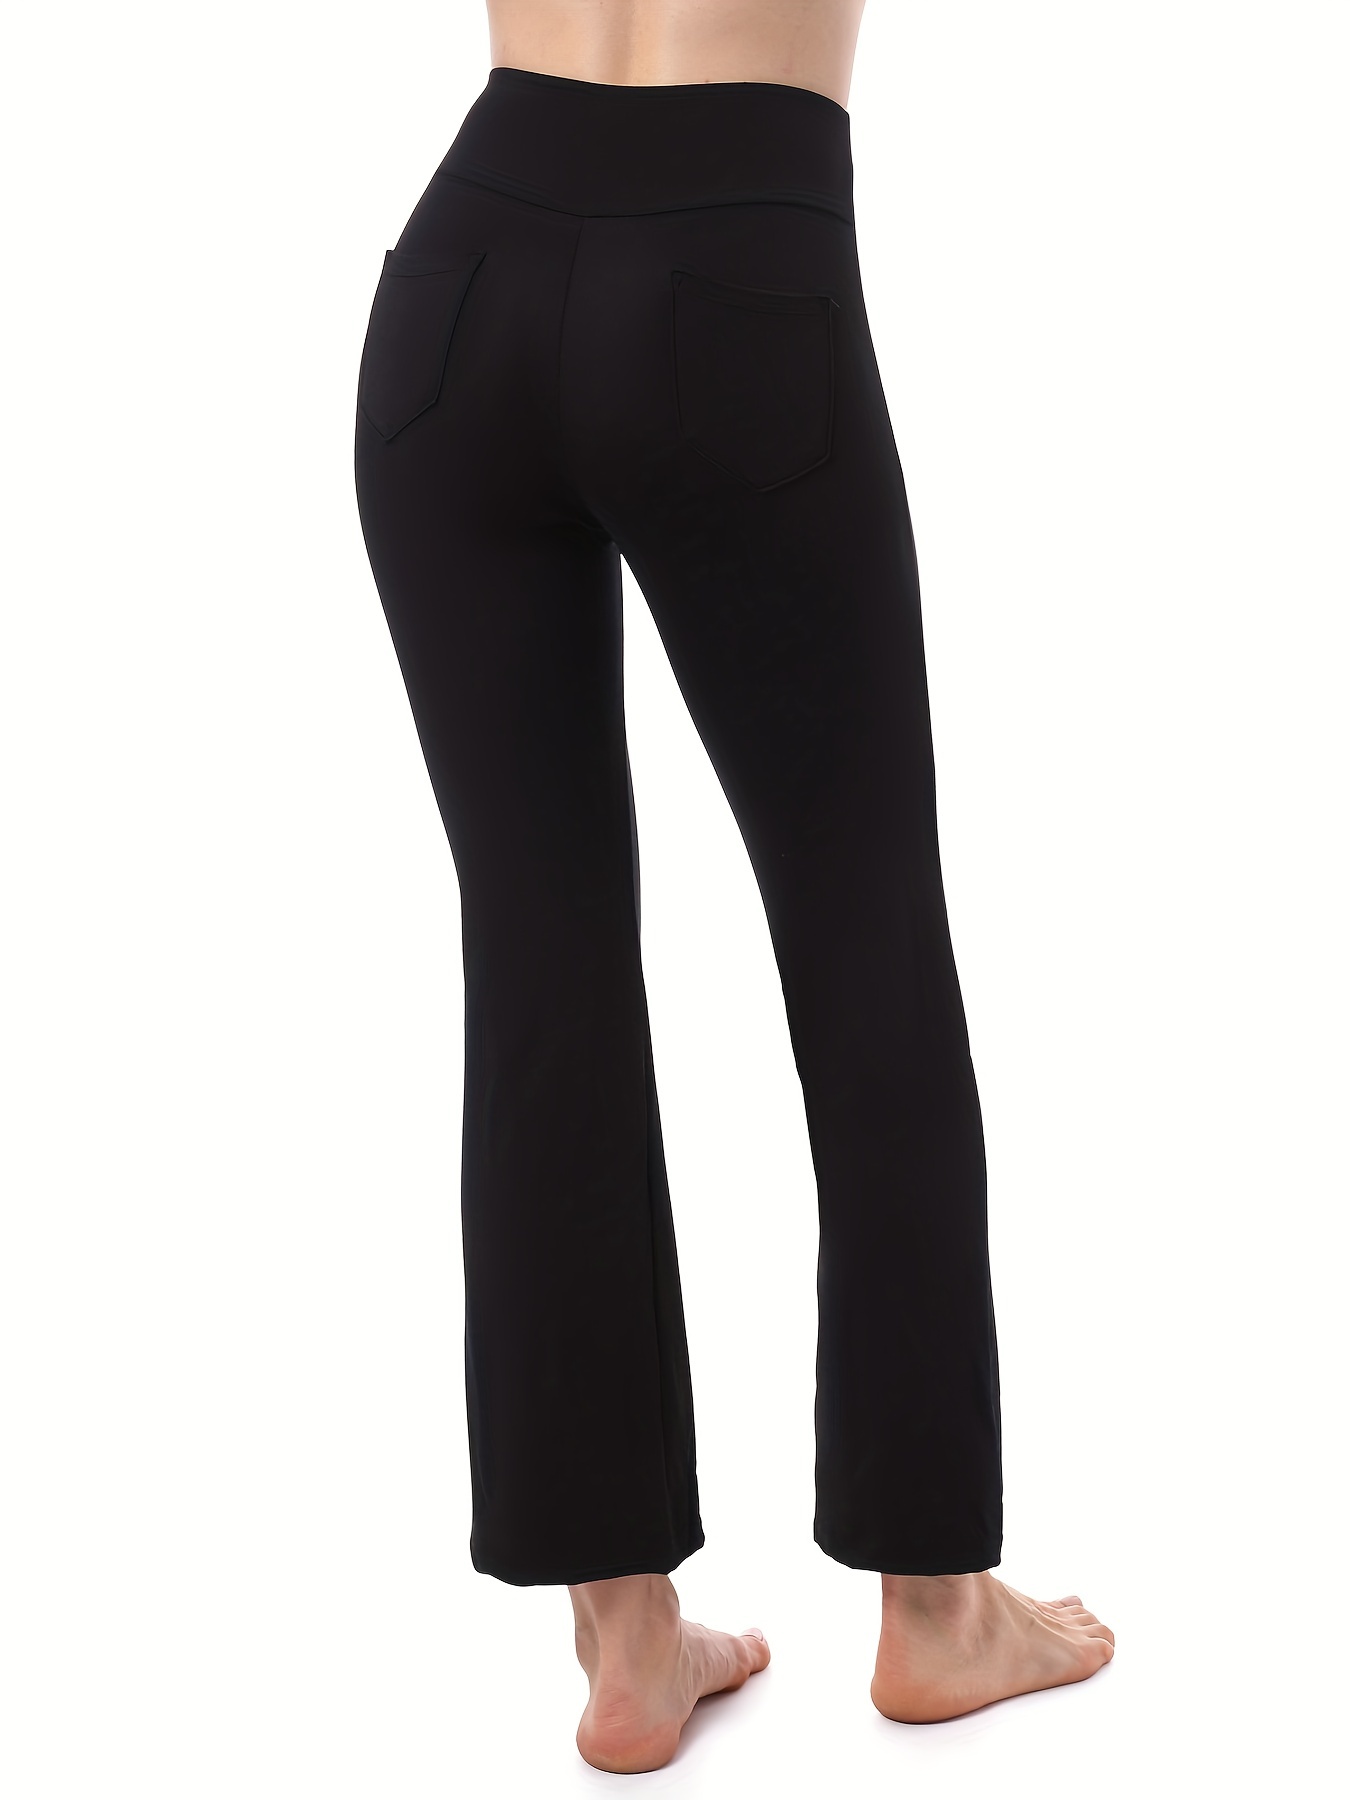 4-Pockets Soft Bootcut Yoga Pants Women High Waist Workout Ladies Long  Bootleg